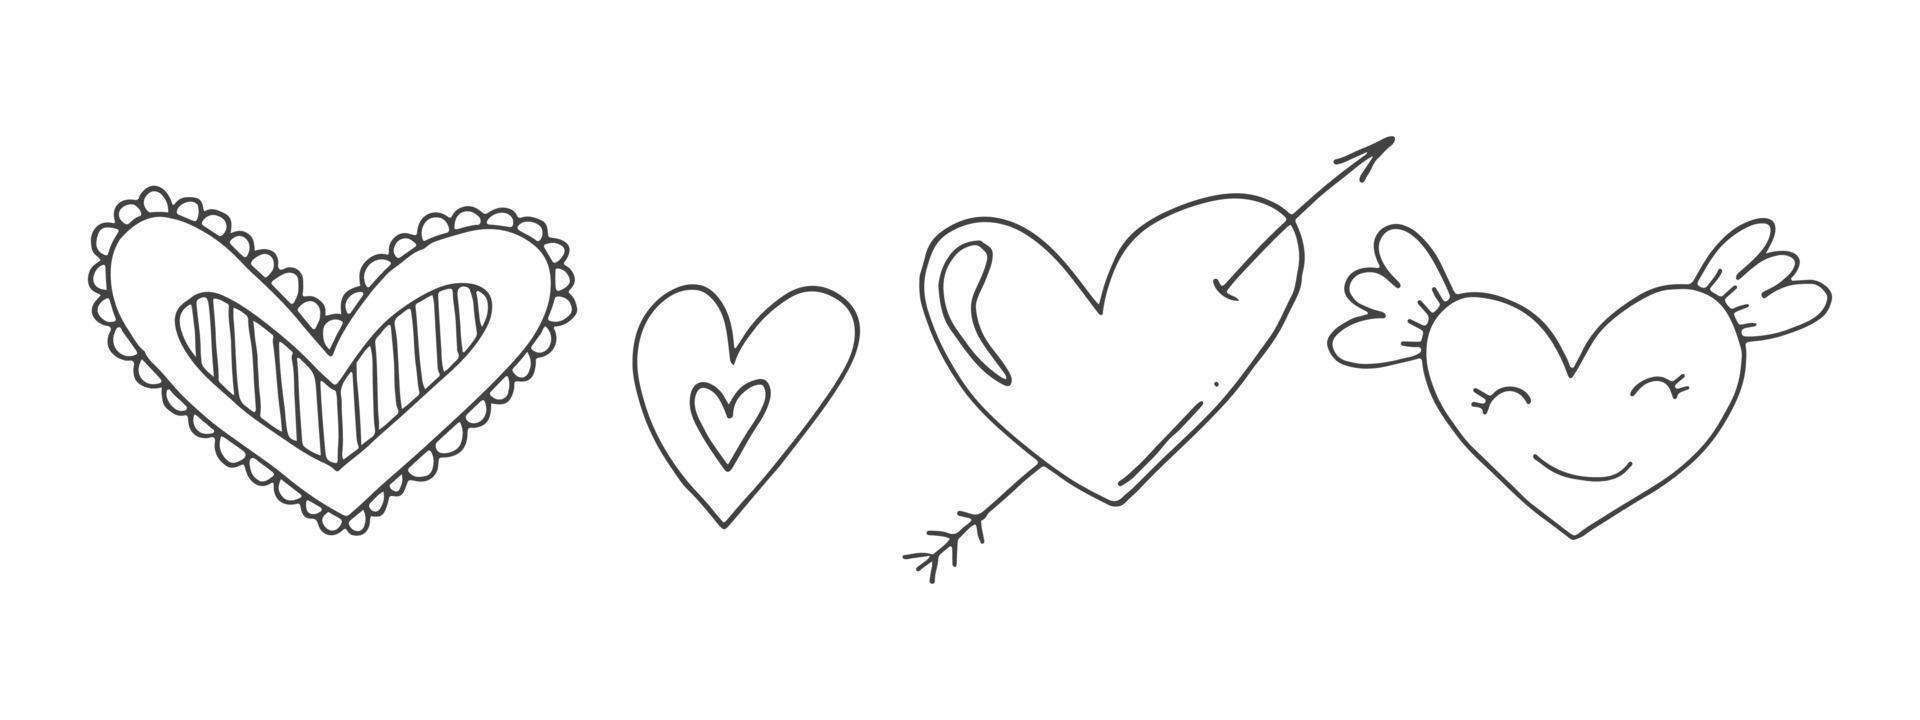 große menge niedlicher handgezeichneter gekritzelelemente über die liebe. Nachrichtenaufkleber für Apps. symbole für valentinstag, romantische veranstaltungen und hochzeit. Herzen mit Streifen, Textur, mit Flügeln und Amorpfeilen. vektor